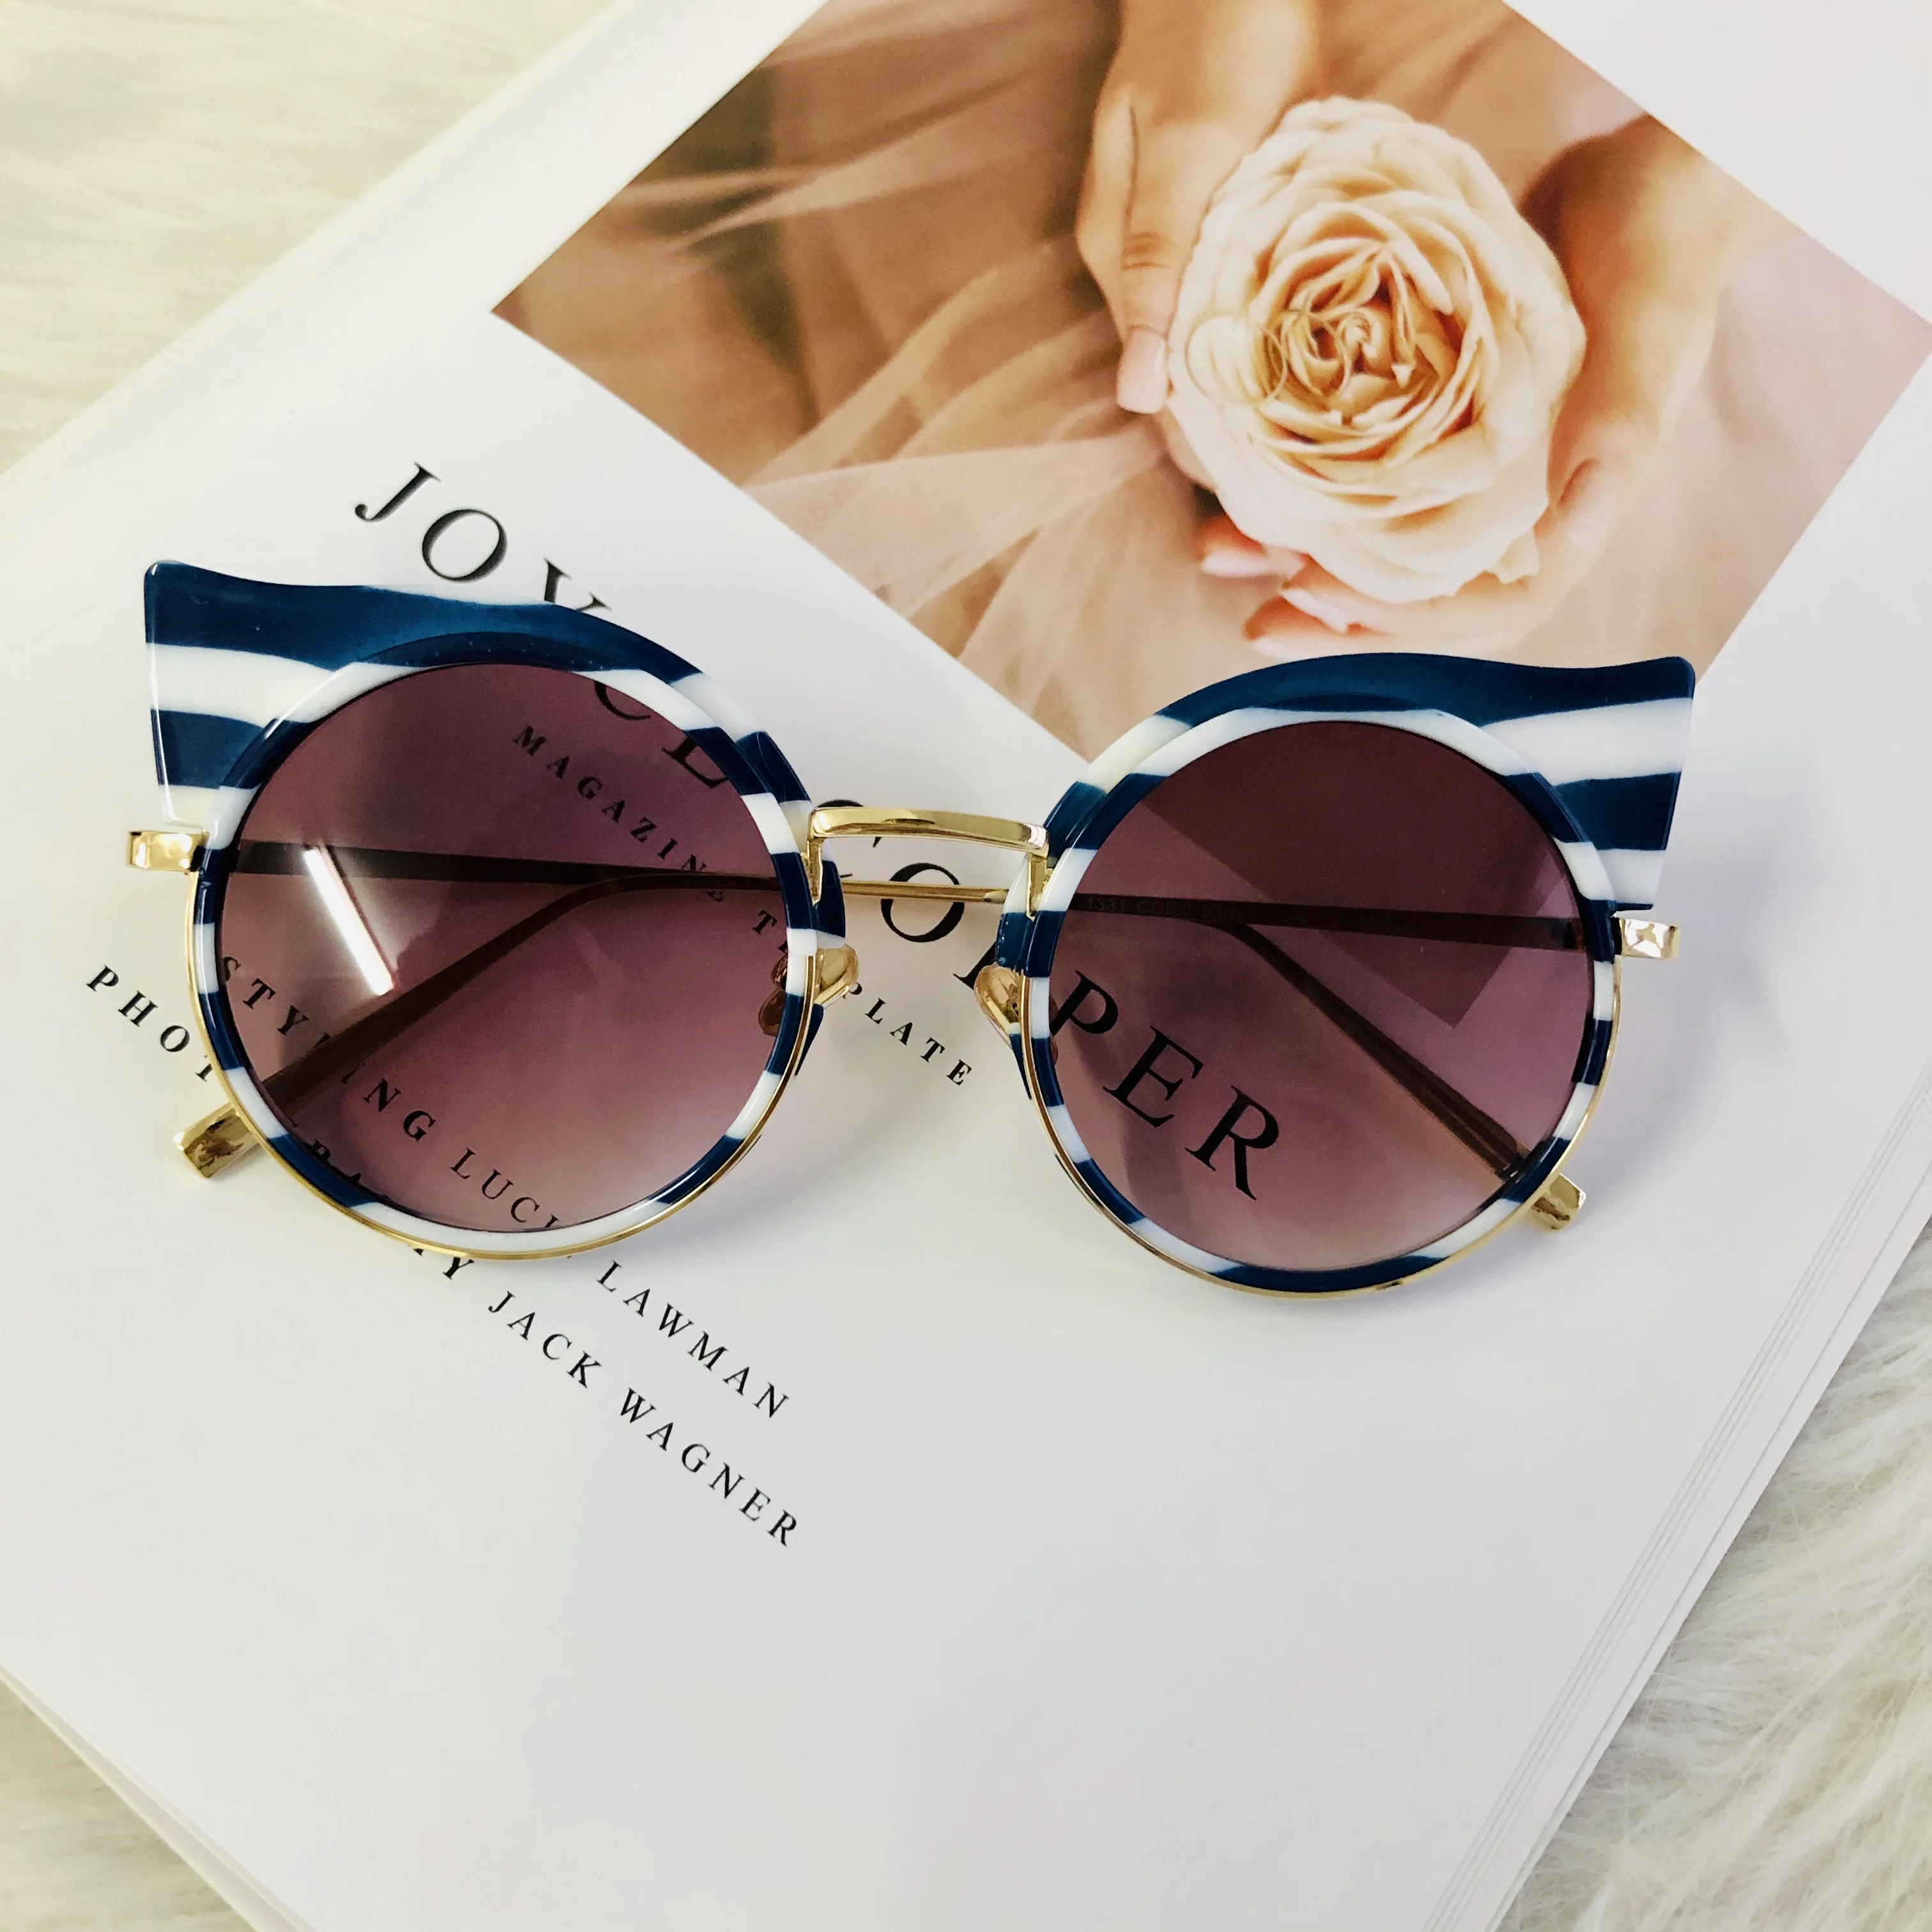 Yuvarlak Marka Tasarımcısı Güneş Gözlüğü Renkli Gözlük Kadınlar Zebra Metal Çerçeve Oculos Retro Şerit güneş gözlüğü 2020 Moda De Sol